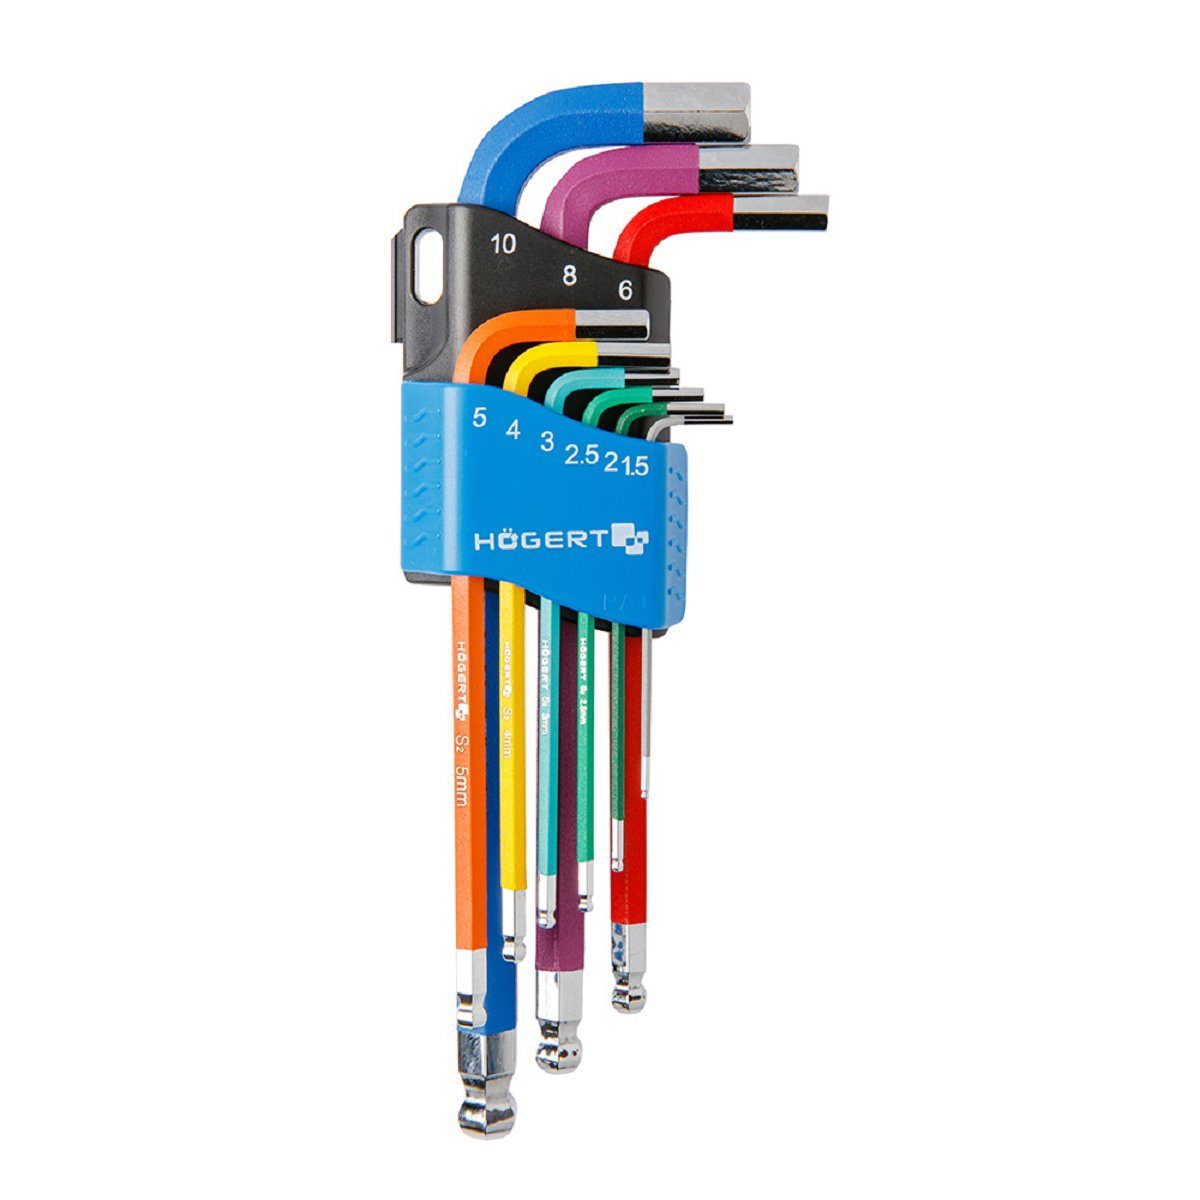 MS Beschläge Werkzeugset Sechskantschlüssel Högert Winkelschlüssel farbig | Werkzeug-Sets